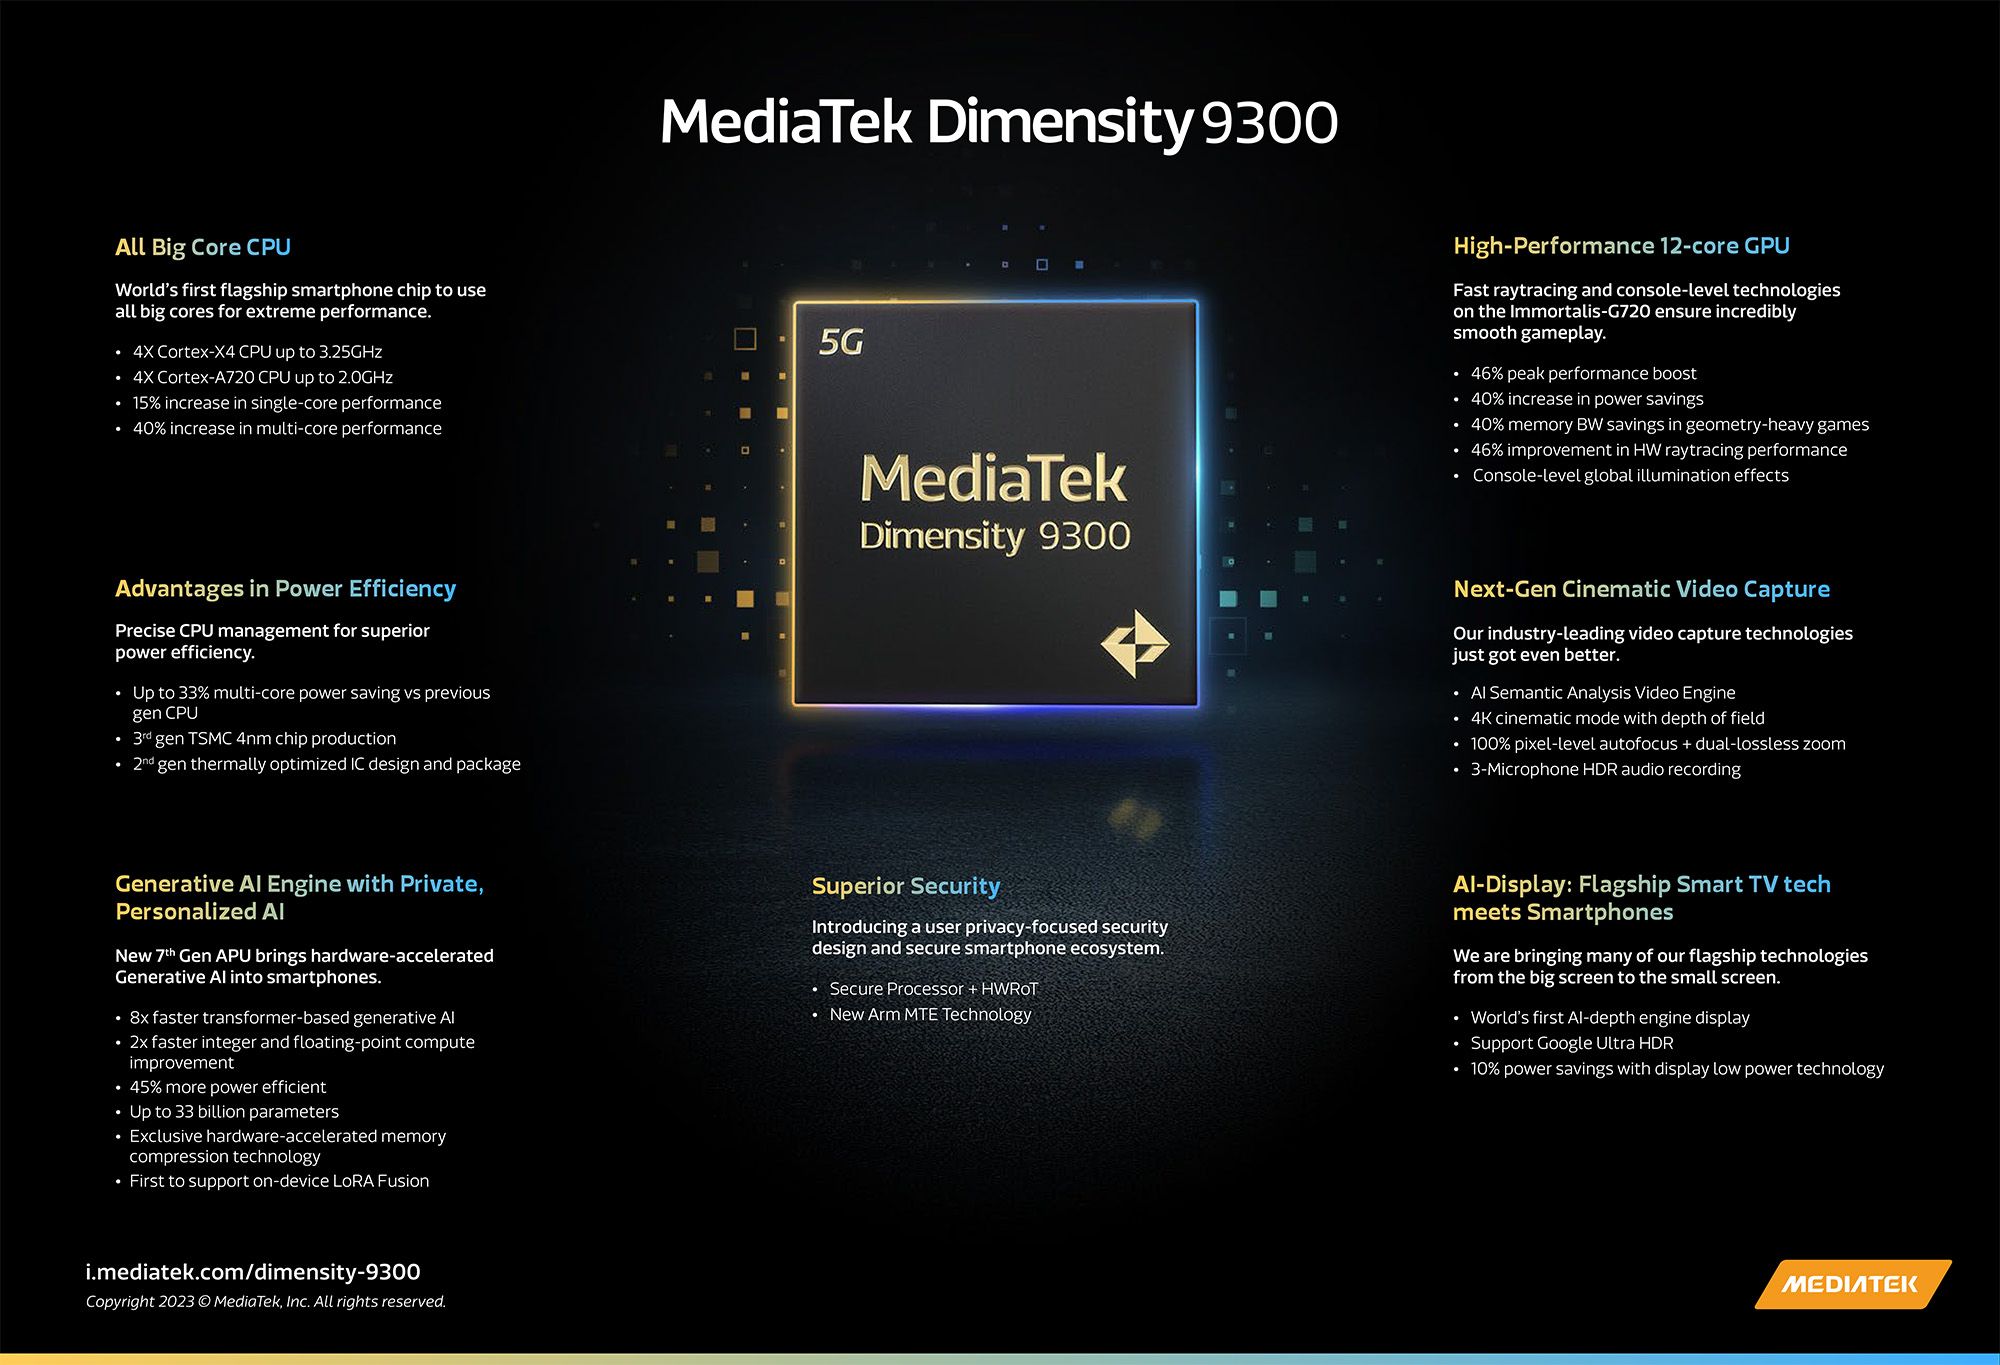 Infográfico MediaTek Dimensity 9300 mostrando as principais especificações do chipset